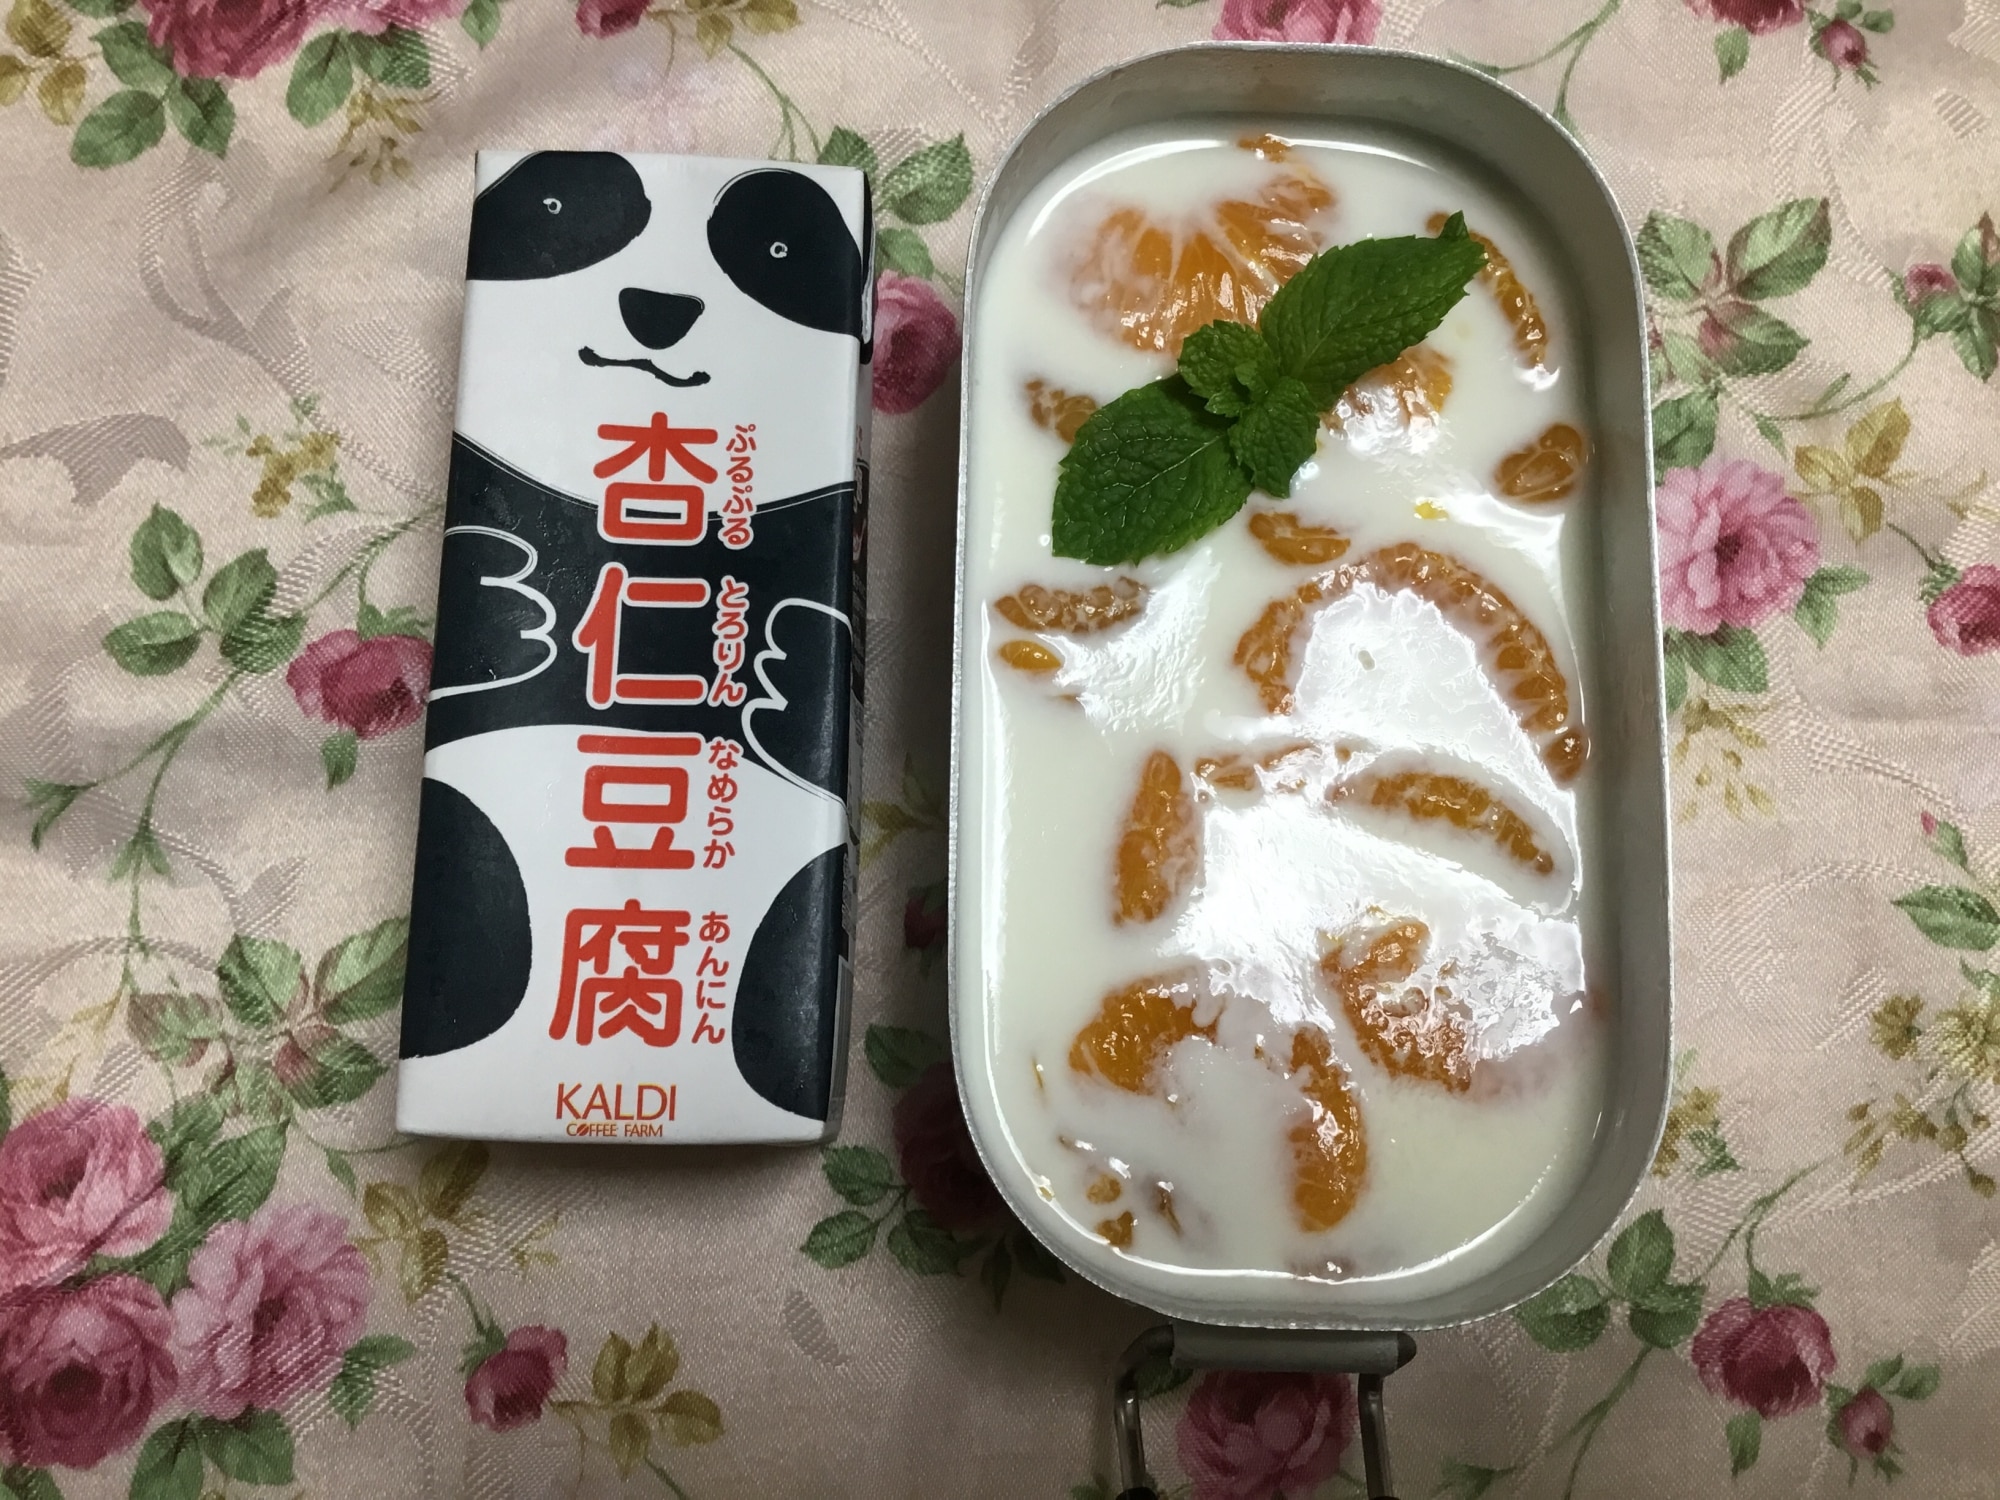 クコの実と胡麻のカルピス杏仁豆腐